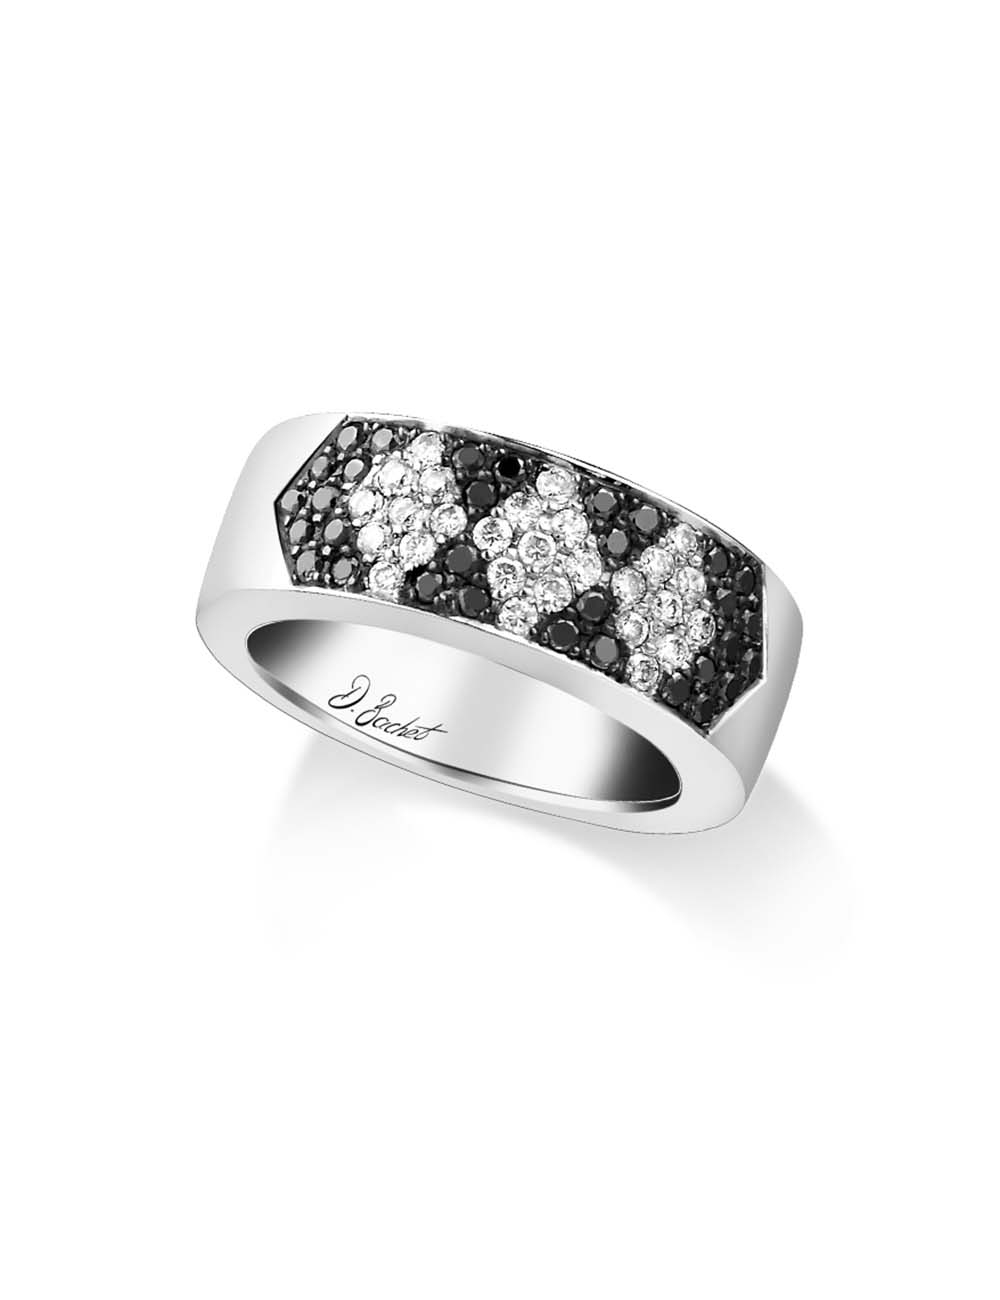 Alliance de mariage luxe et audacieuse pour femme en platine diamants blancs et diamants noirs